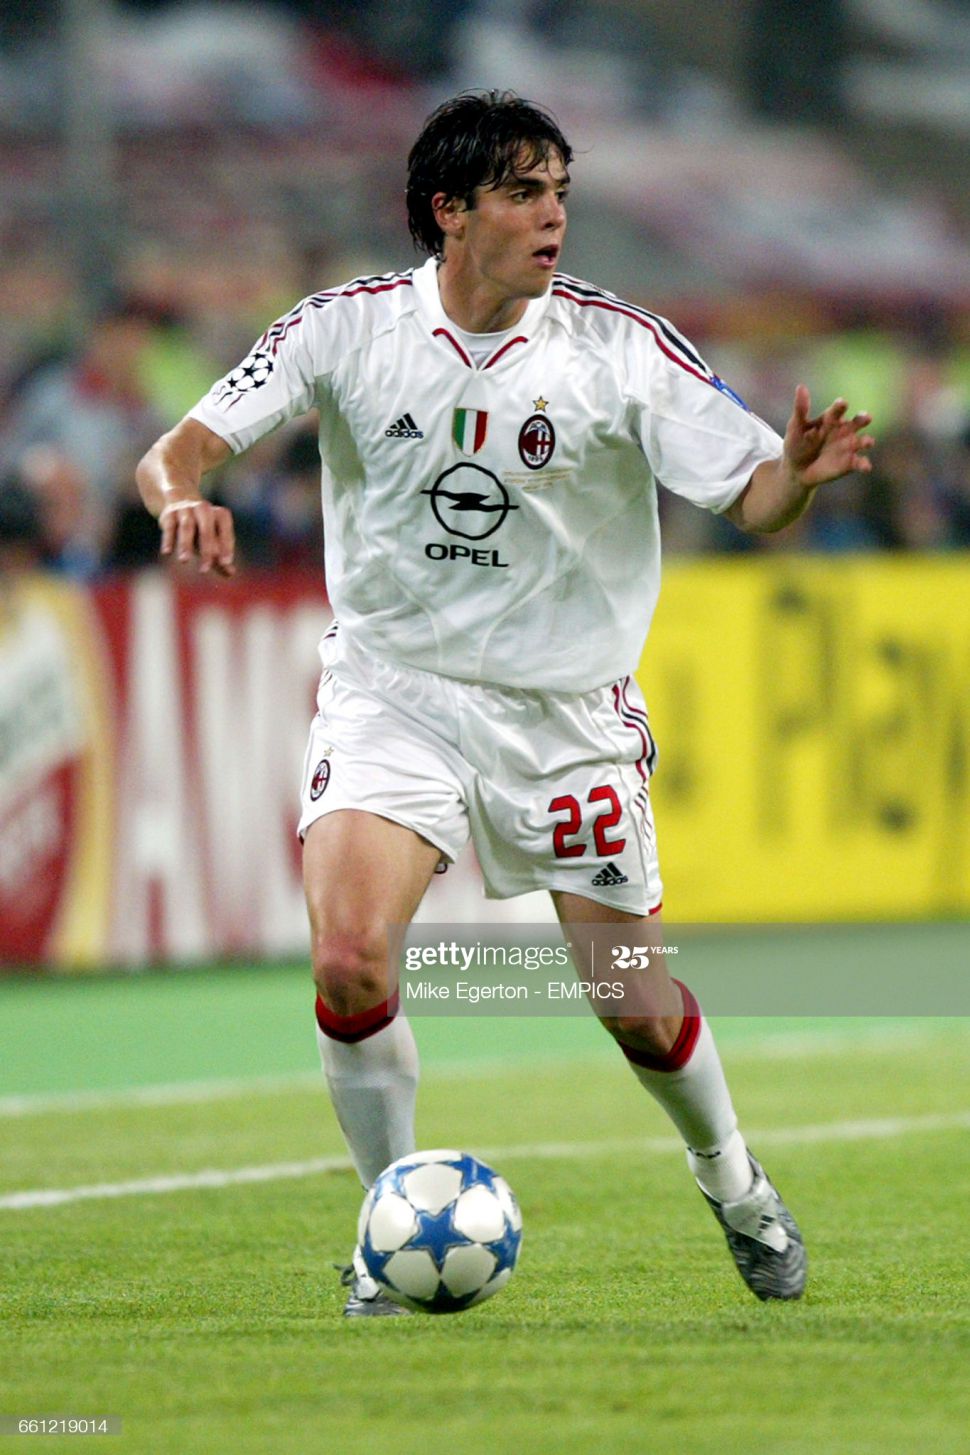 Áo AC Milan Champion League Final 2005 away shirt jersey white 2004